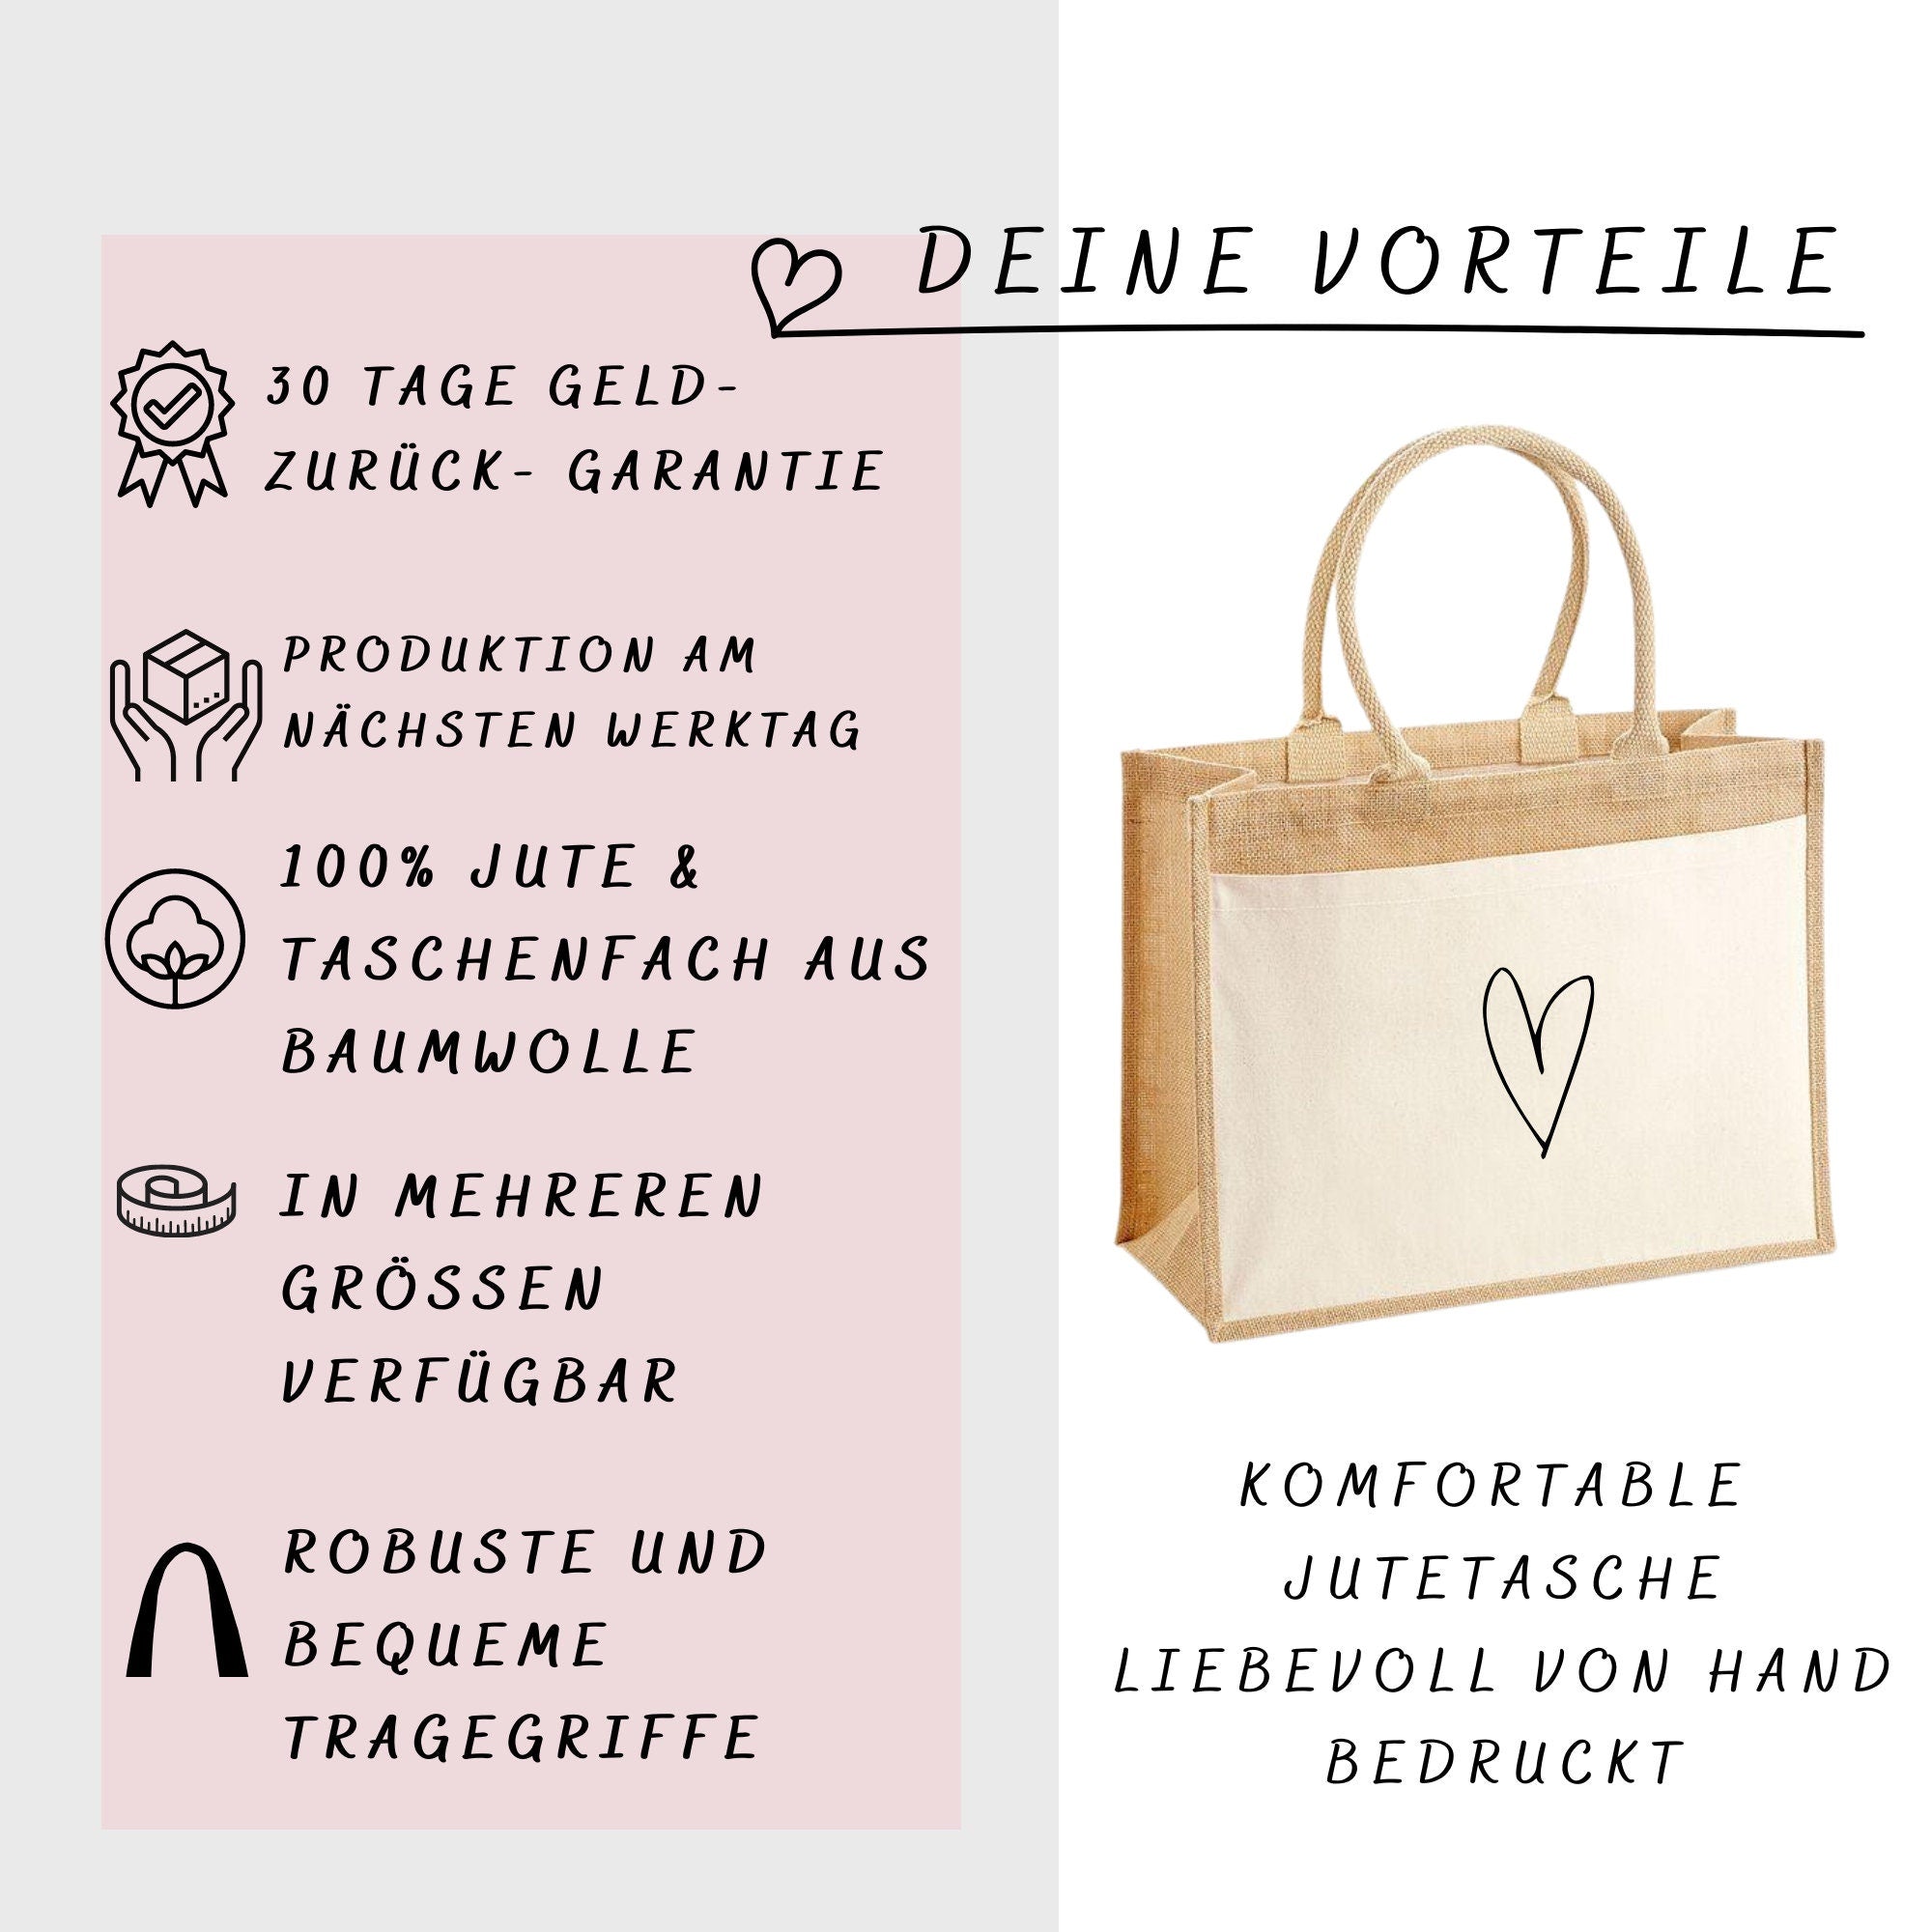 Jutetasche| personalisiert mit Namen| "Eine von den Juten"| Einkaufstasche| Geschenk - GlamourDesign